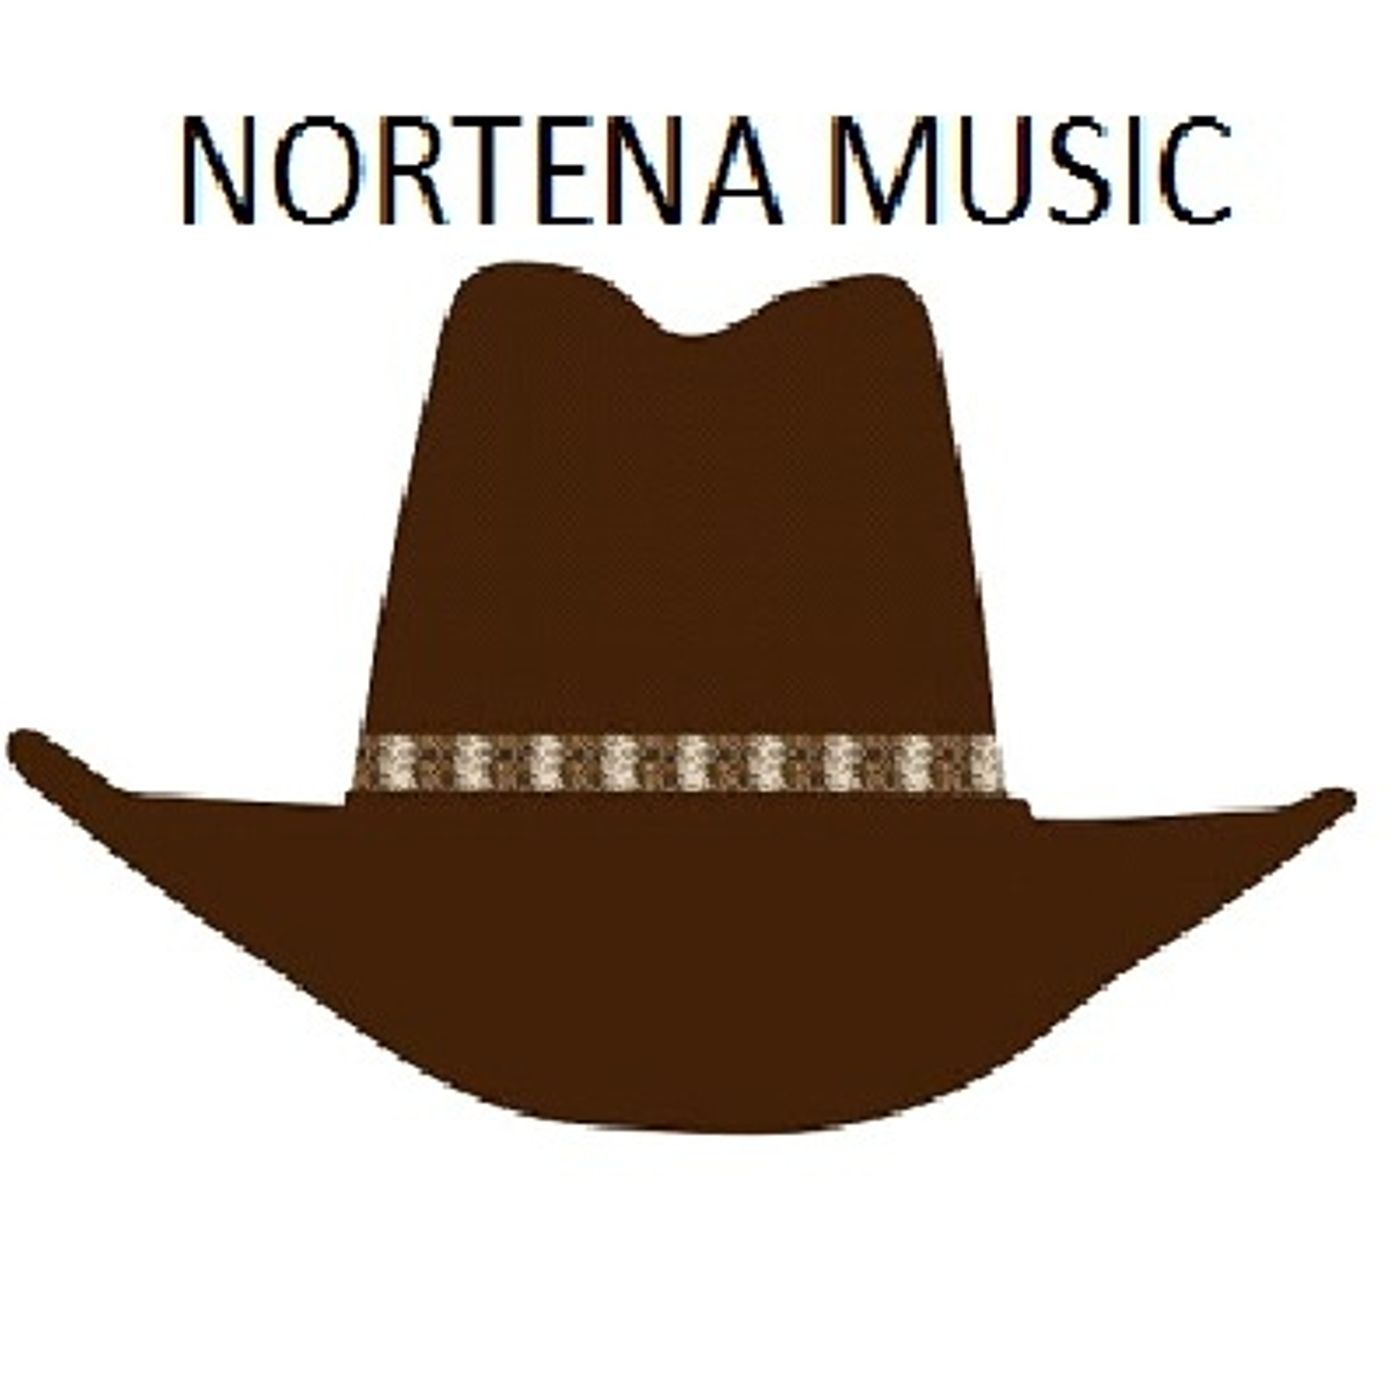 La Nortenita Del Norte's show